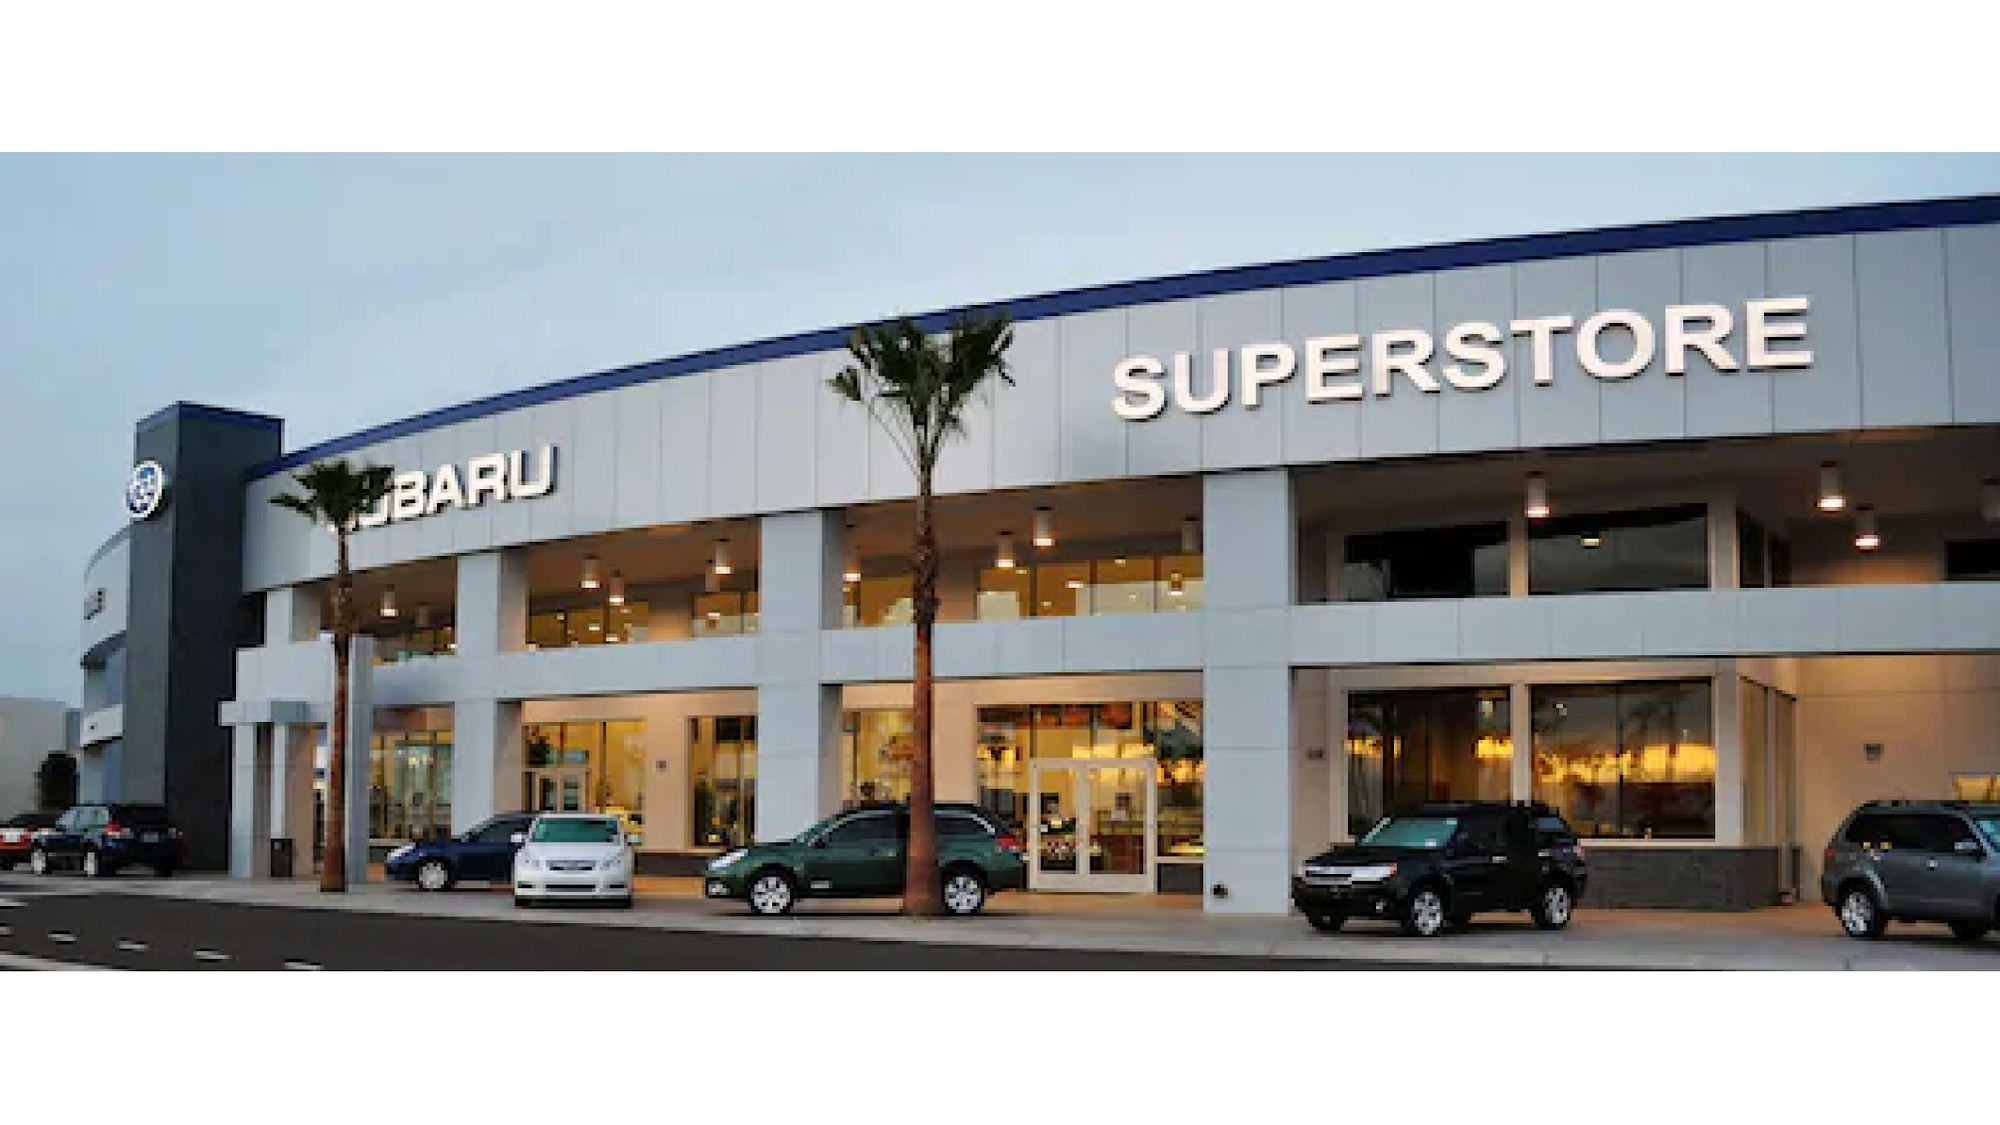 Subaru Superstore of Chandler